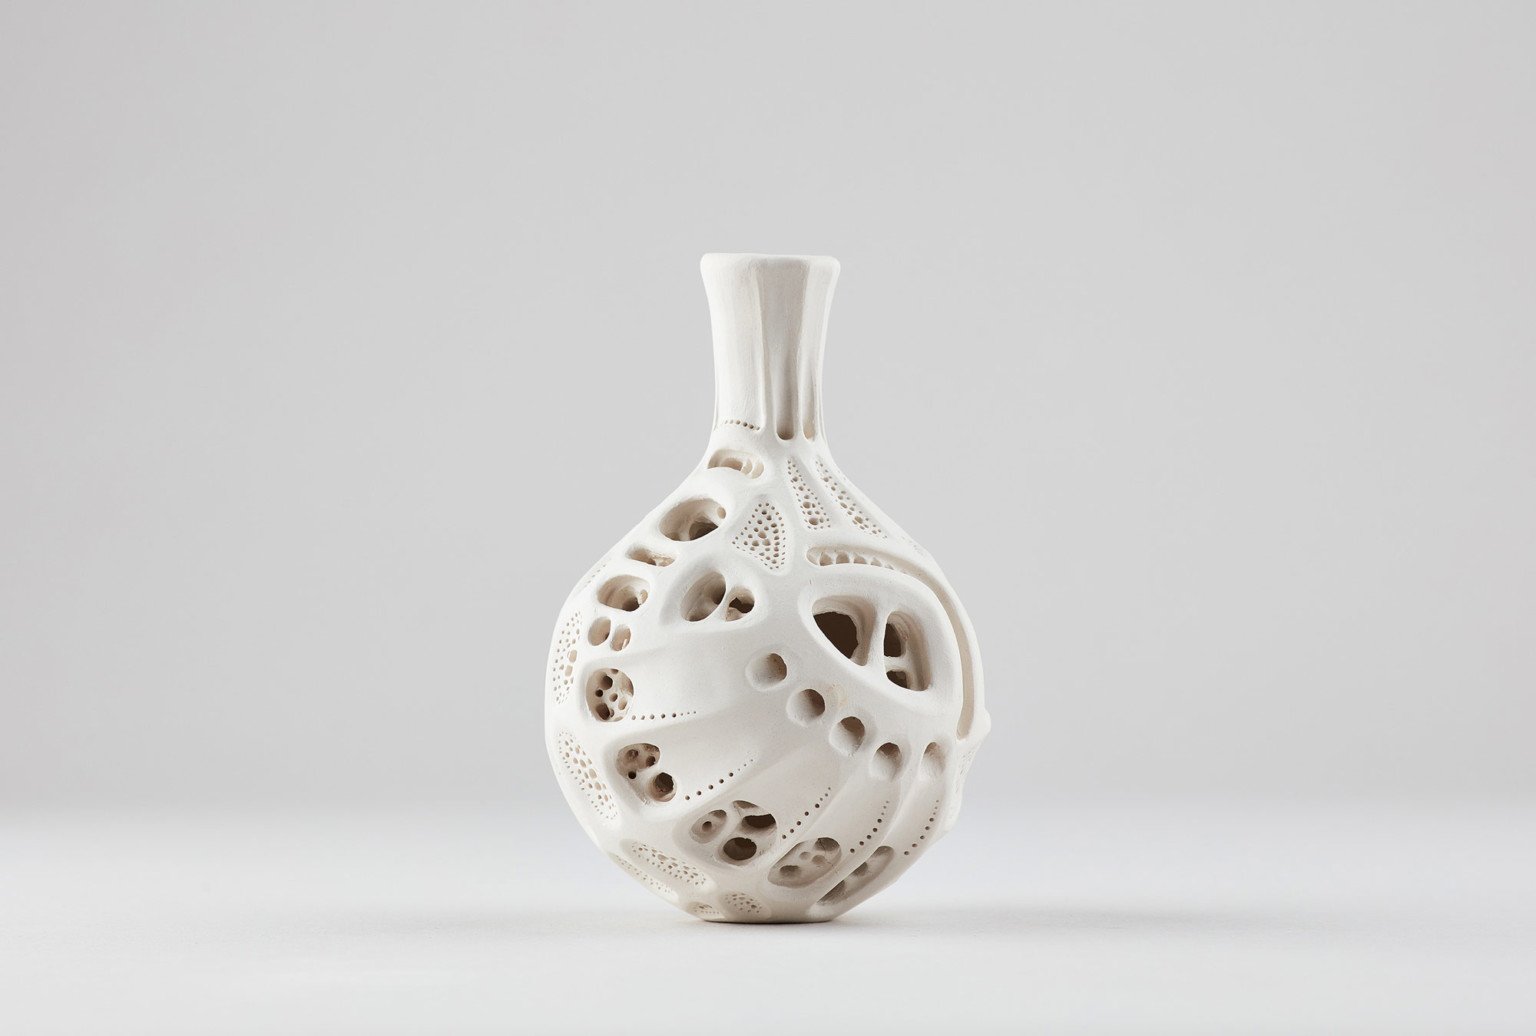 AnnaWhitehouse 3 cerámica arcilla artesanía reto arte 100días creatividad estimulante